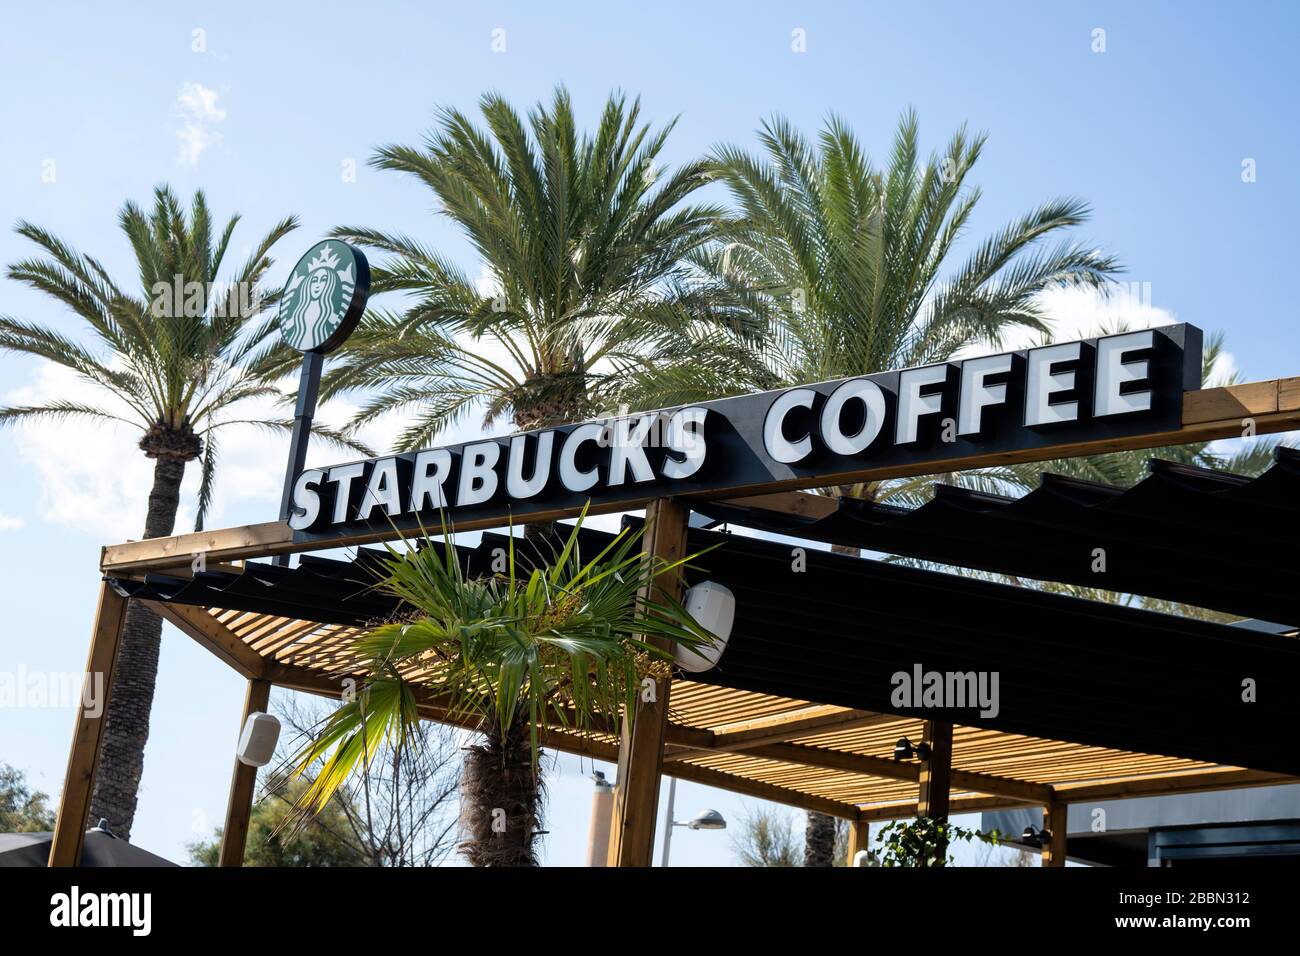 Palma de Mallorca, Spanien - 19. September 2017. Starbucks Kaffeeschild. Starbucks Coffee ist eine US-amerikanische Kette von Cafés, die in Seattle gegründet wurde. Stockfoto